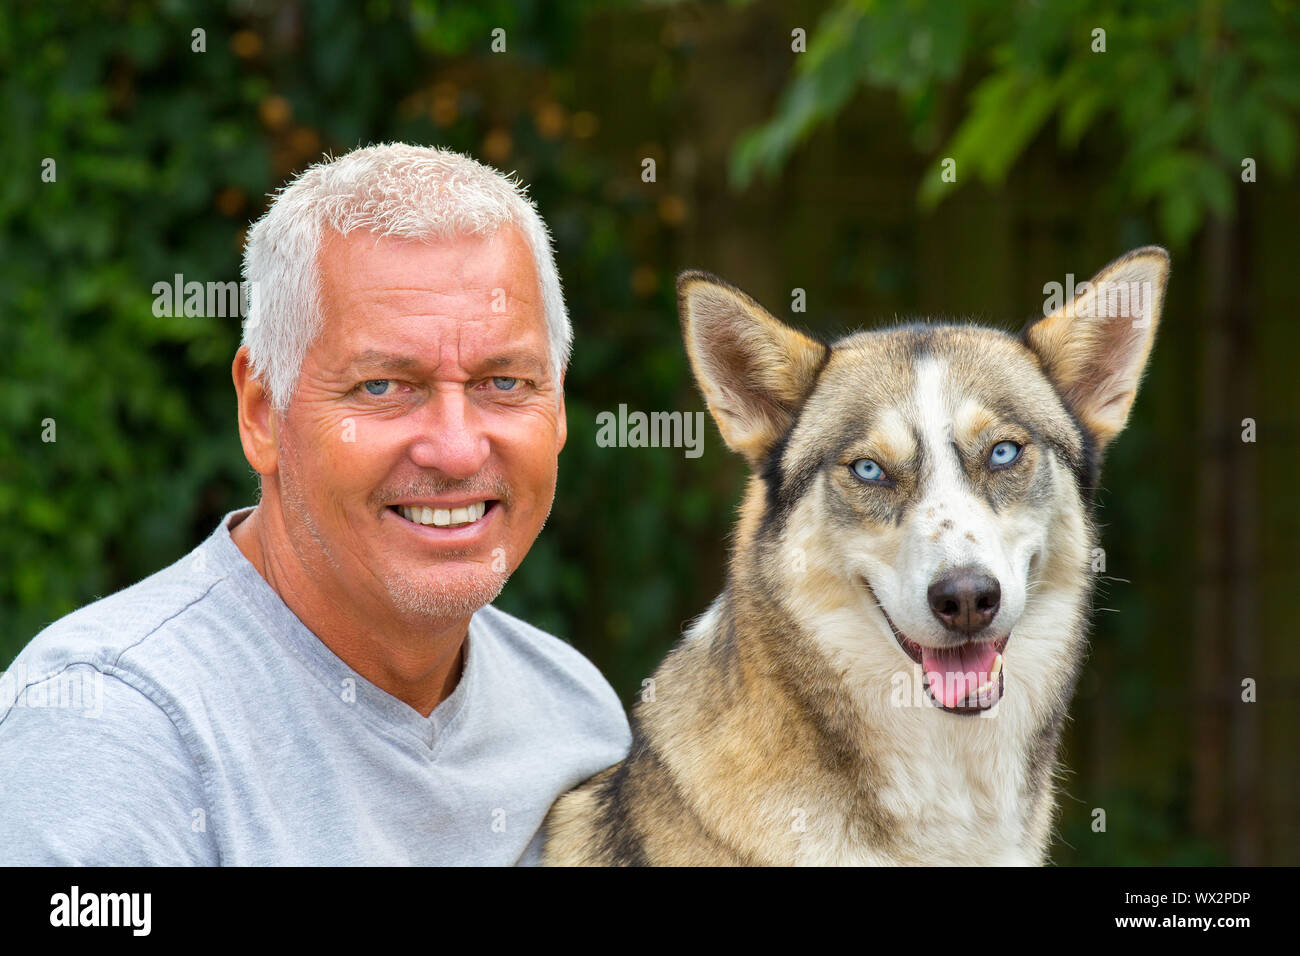 Portrait of dutch man with husky dog Stock Photo